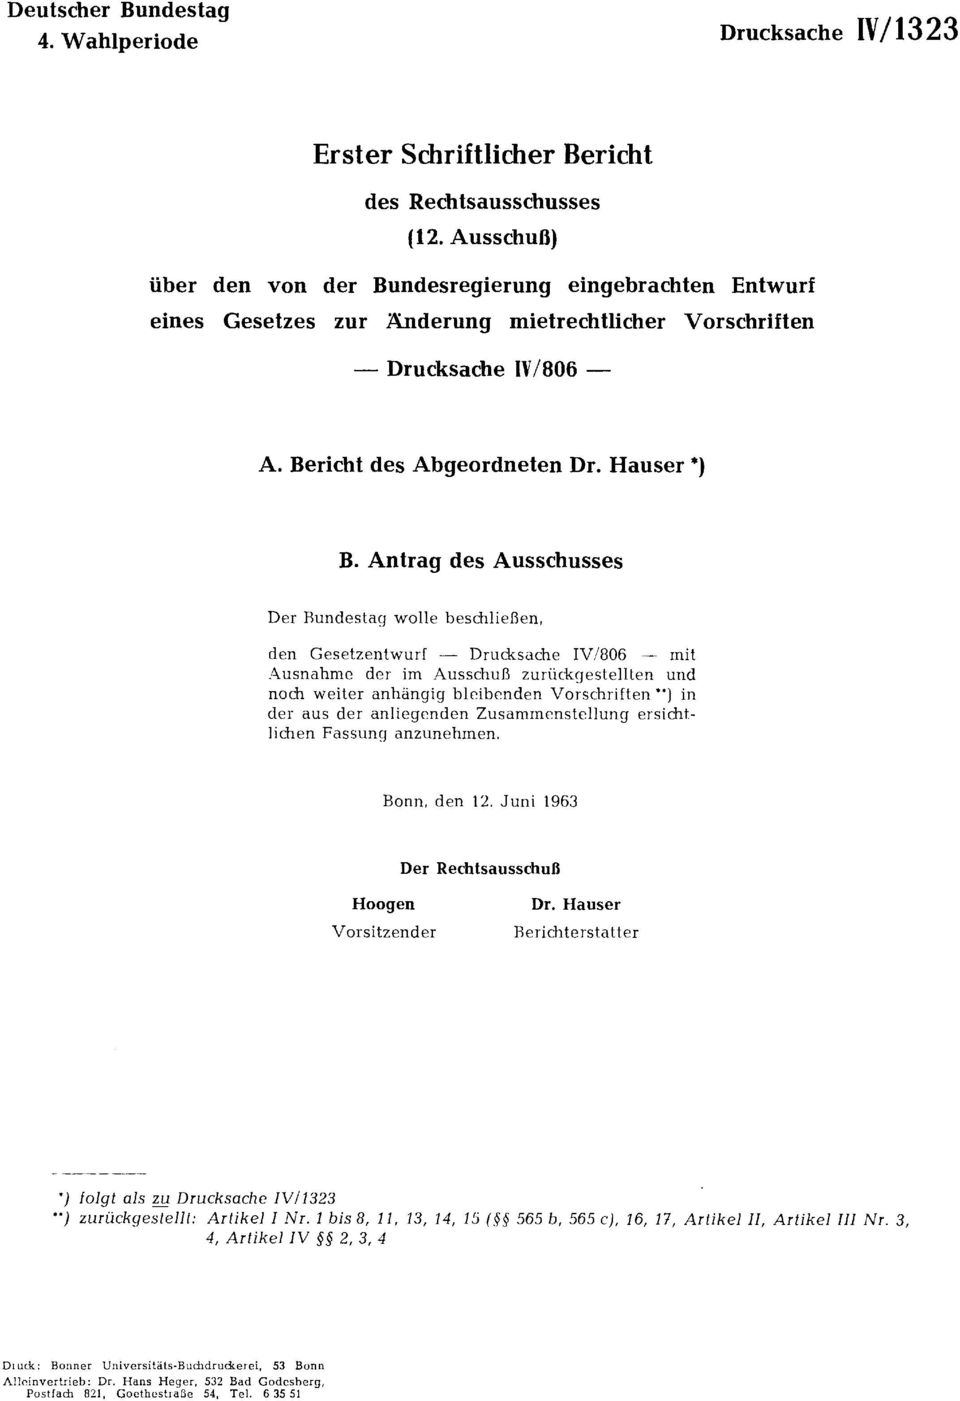 Antrag des Ausschusses Der Bundestag wolle beschließen, den Gesetzentwurf Drucksache IV/806 mit Ausnahme der im Ausschuß zurückgestellten und noch weiter anhängig bleibenden Vorschriften **) in der